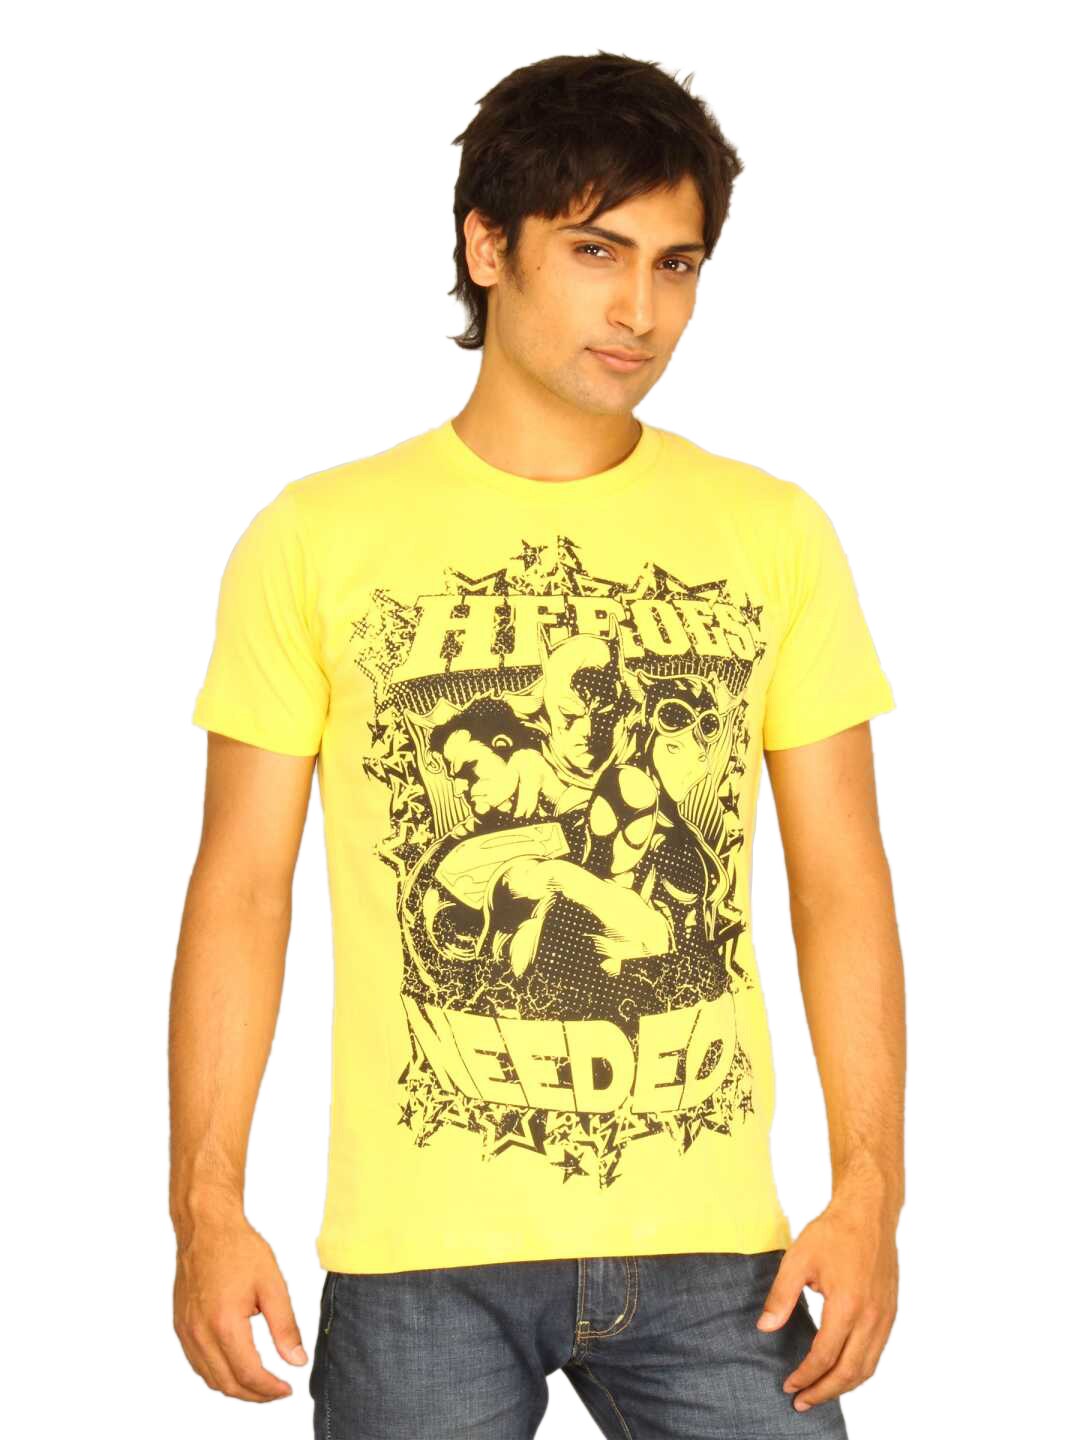 Guerrilla Men's Heroes Needed Yellow T-shirt